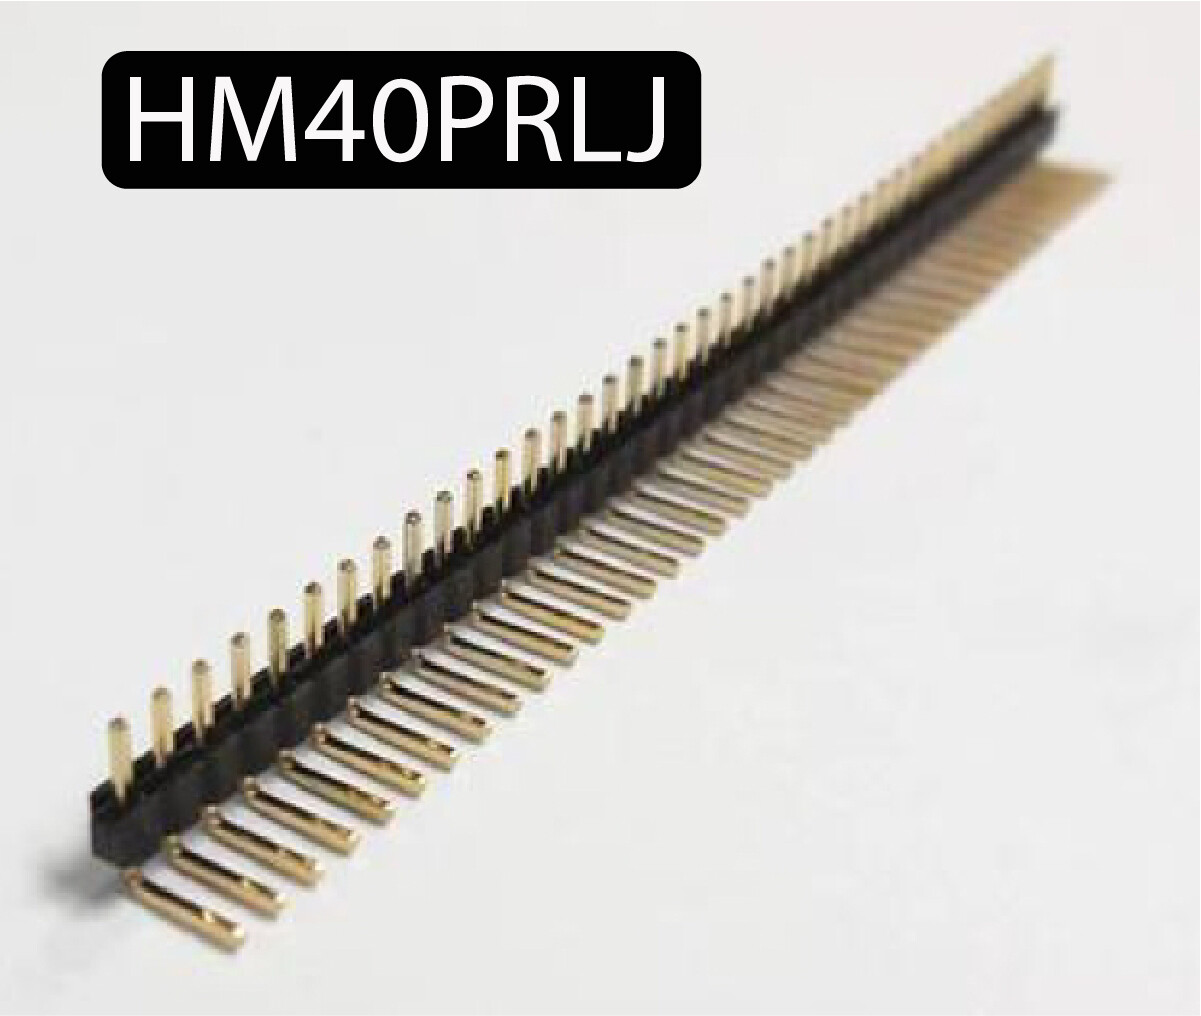 Connecteurs empattement 2.54 mm PCB JST bande de connecteurs pour Arduino: connecteurs mâles angle droit